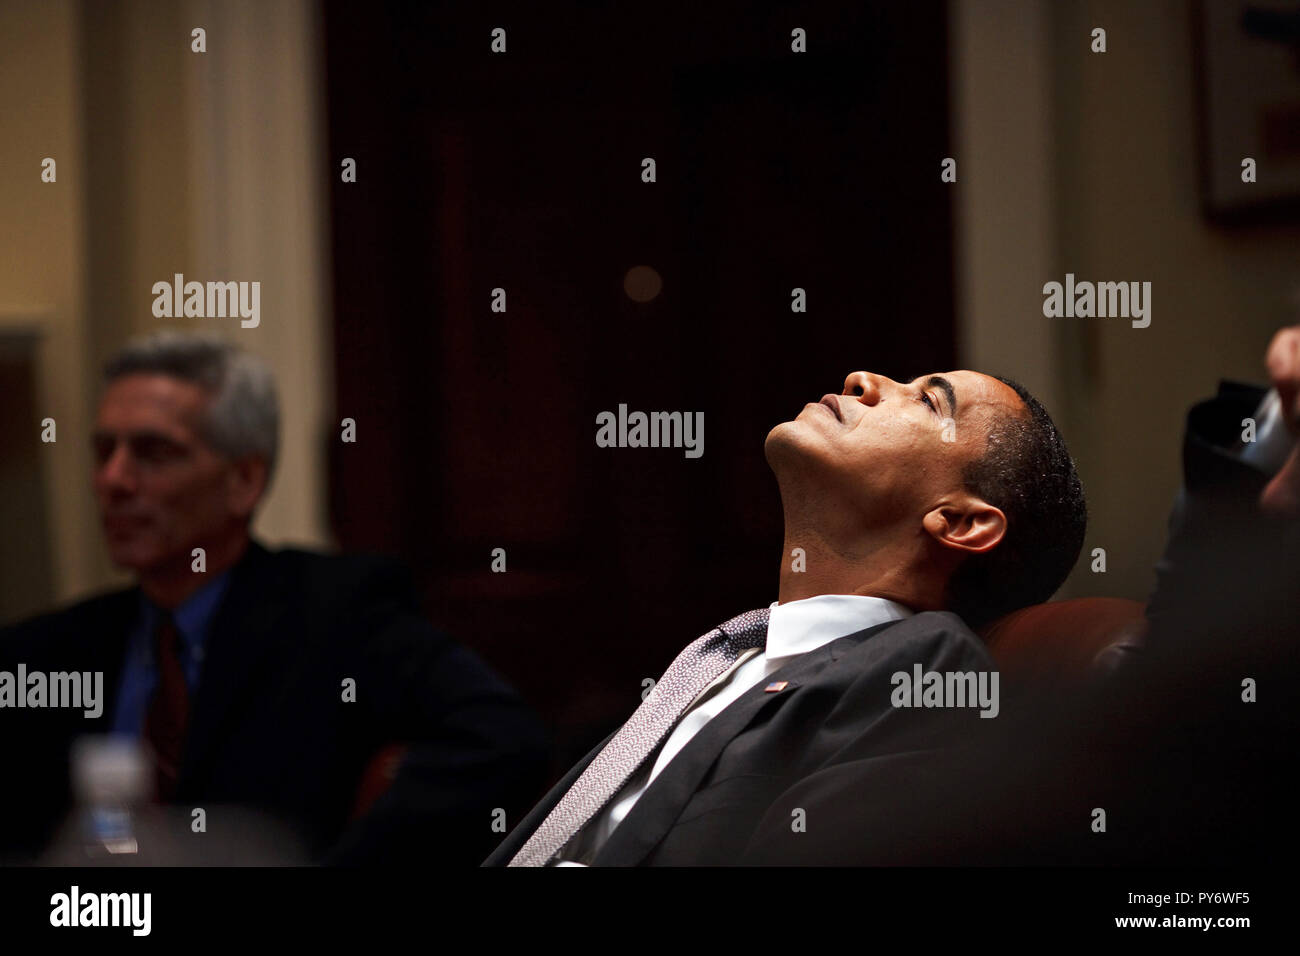 Le président Barack Obama lors d'une réunion sur le budget dans la Roosevelt Room 1/29/09. Photo Officiel de la Maison Blanche par Pete Souza Banque D'Images